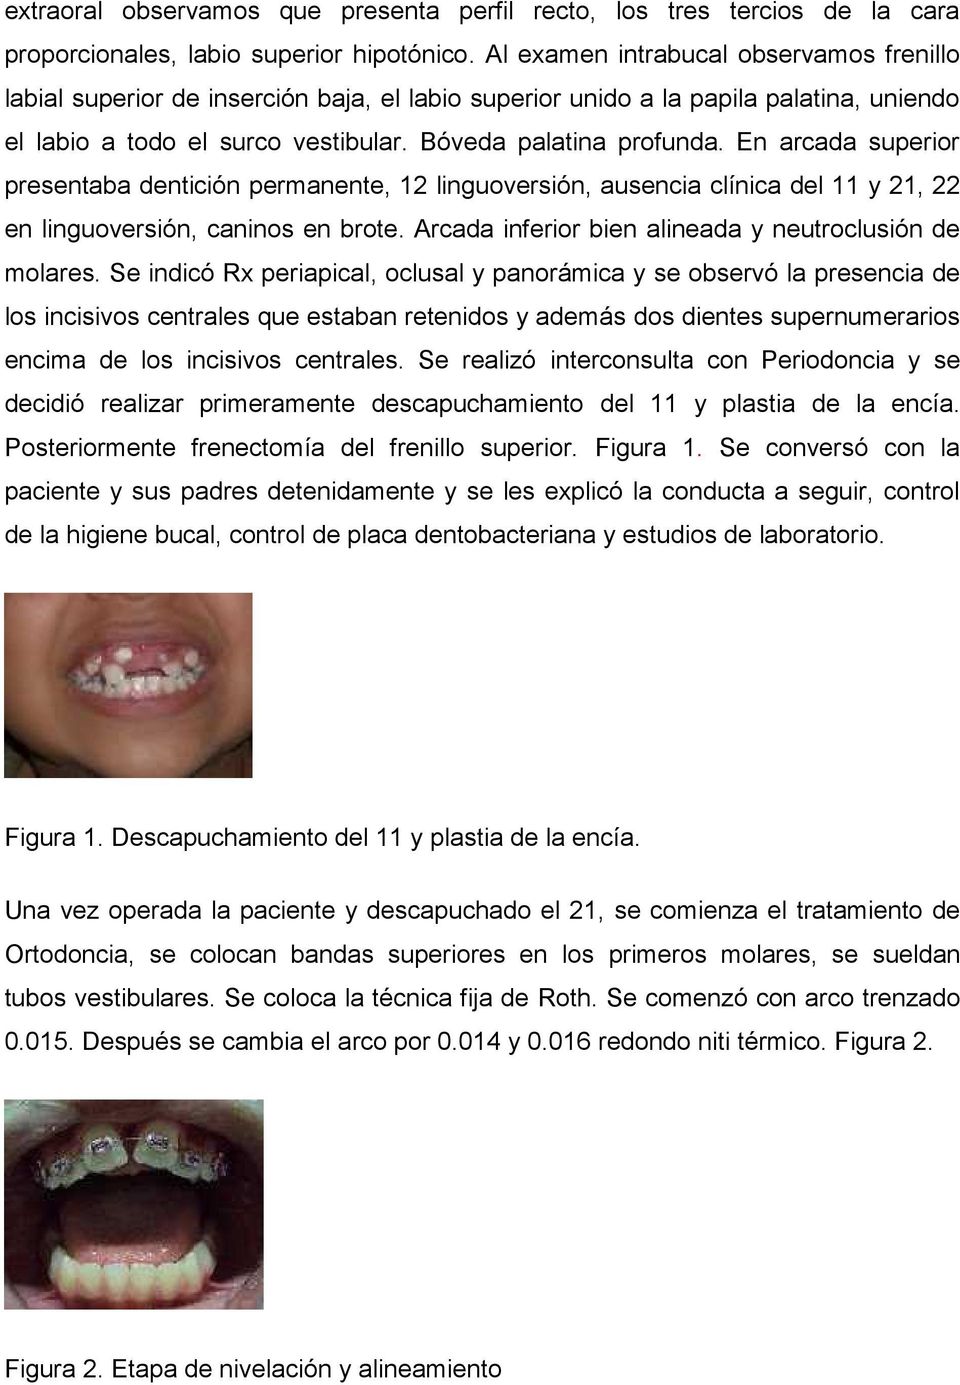 En arcada superior presentaba dentición permanente, 12 linguoversión, ausencia clínica del 11 y 21, 22 en linguoversión, caninos en brote. Arcada inferior bien alineada y neutroclusión de molares.